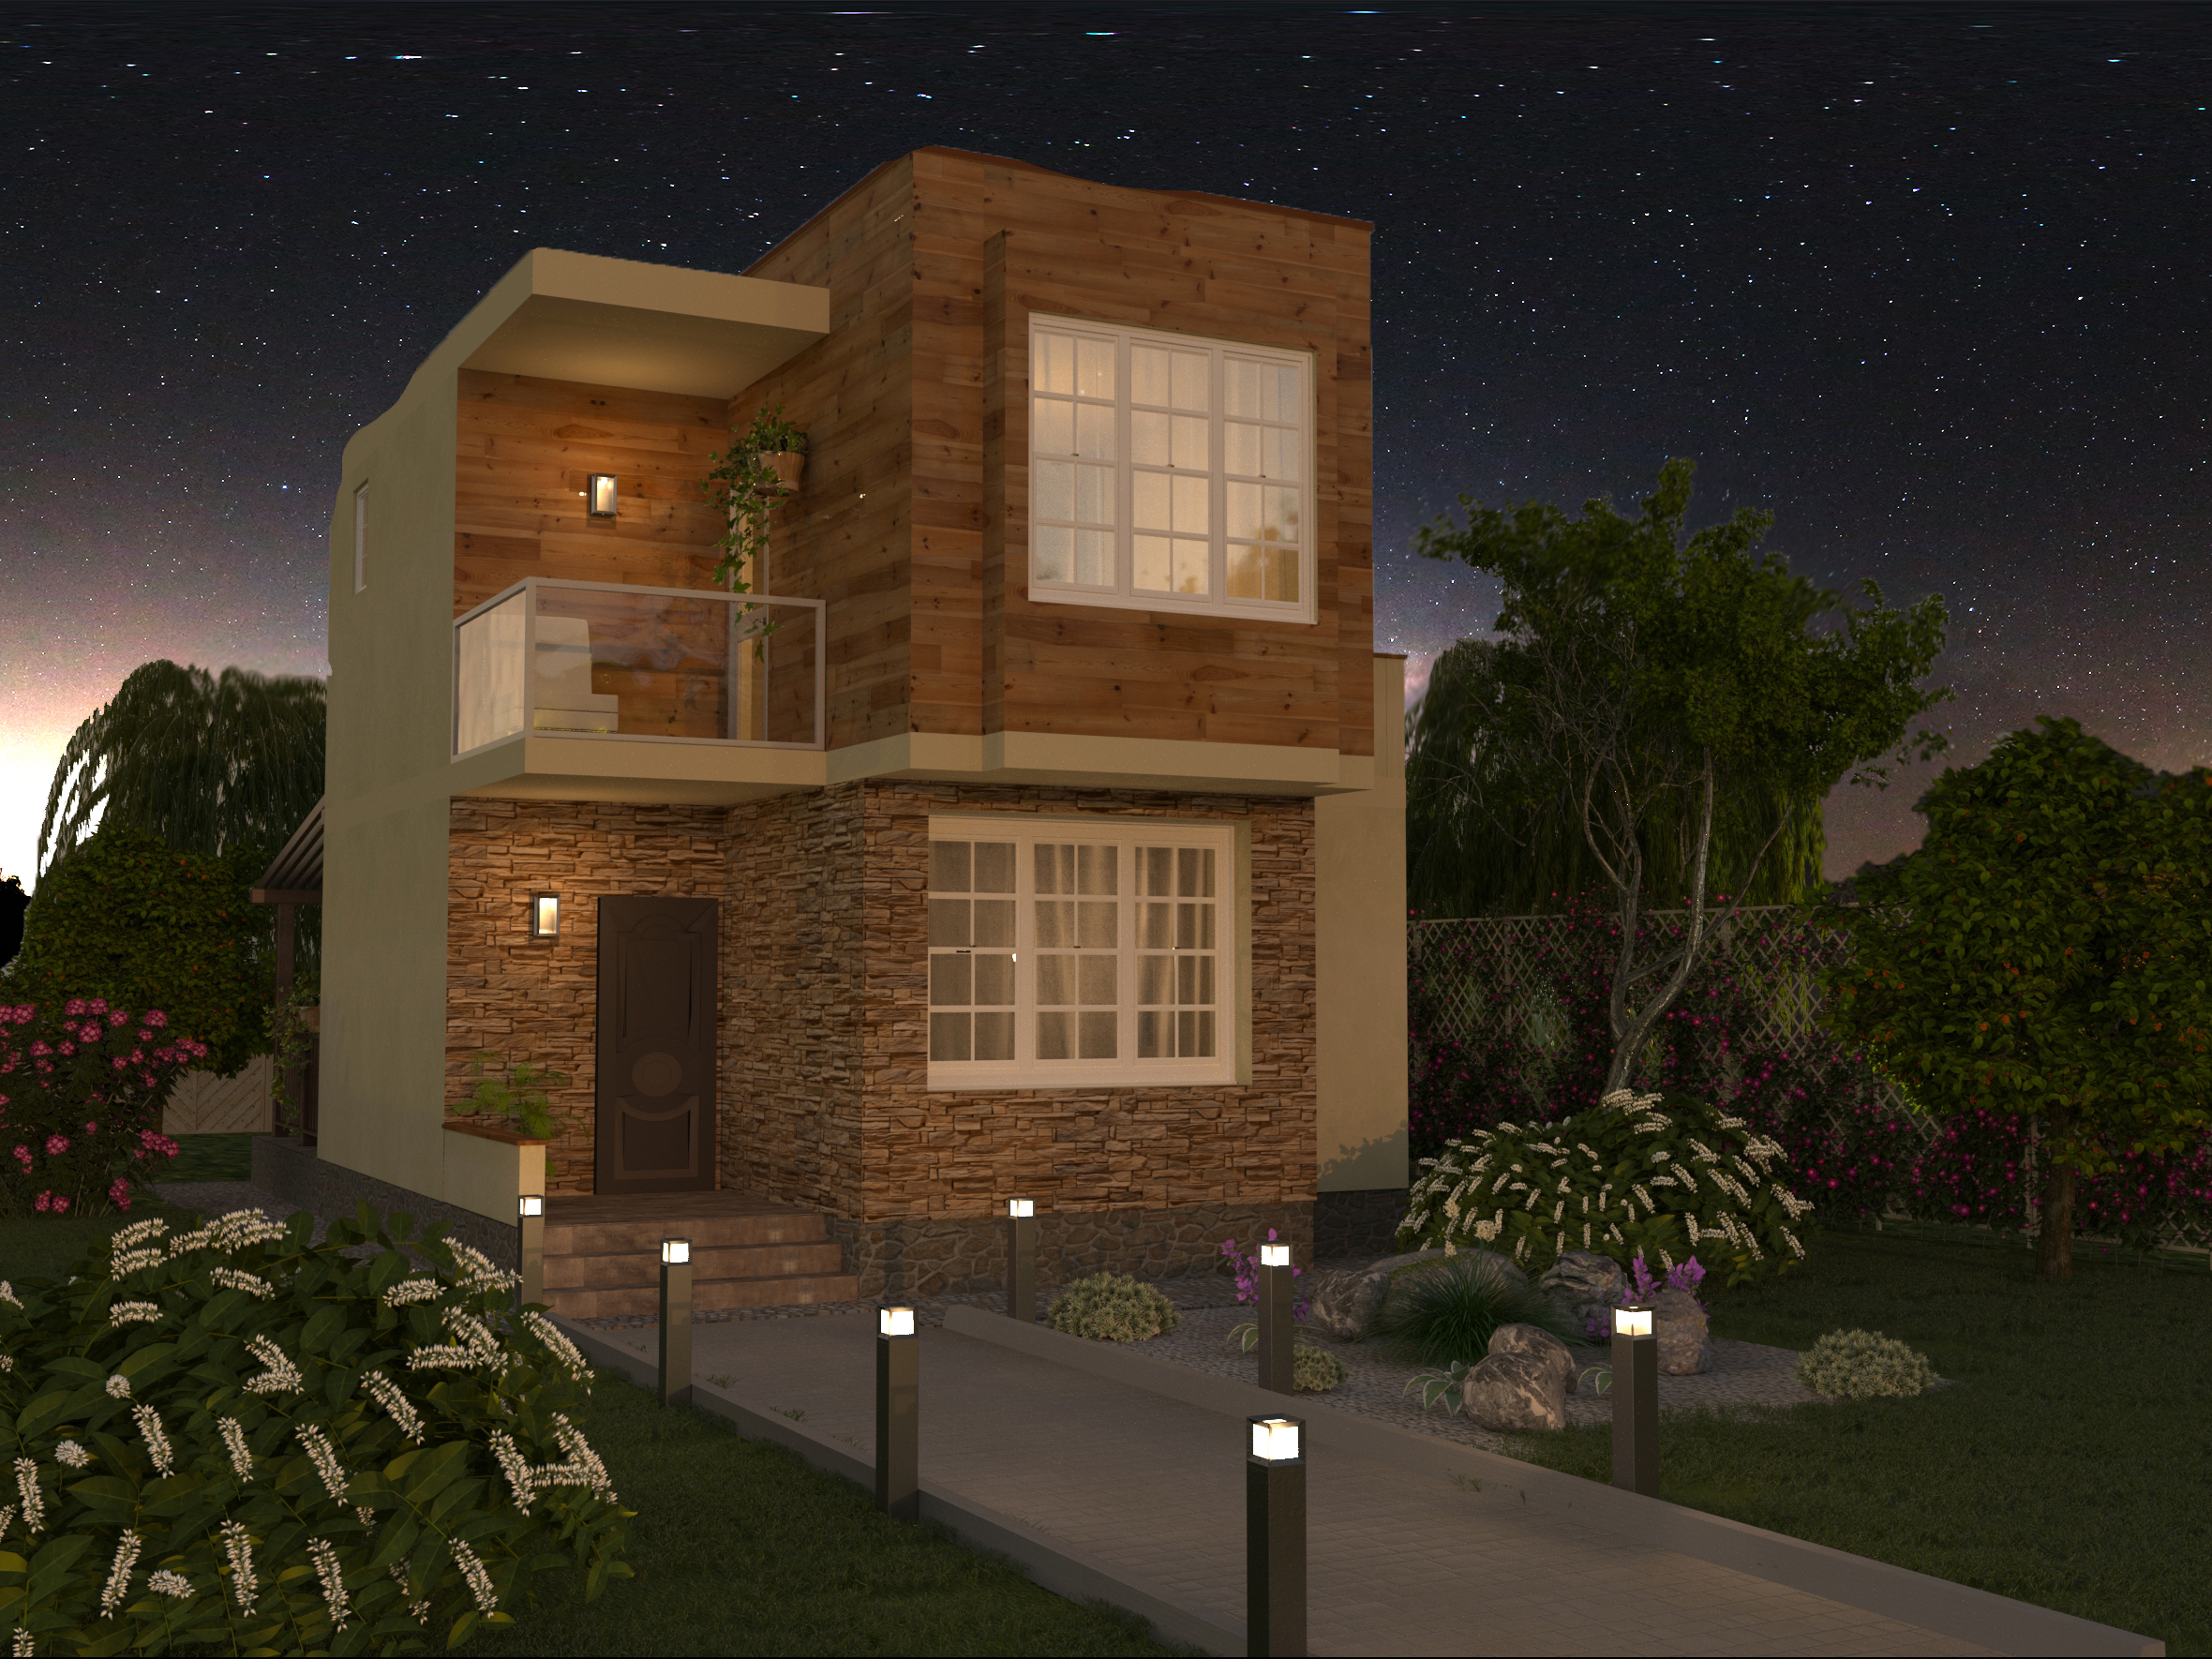 Двоповерховий будинок 6,5х7,5м в 3d max corona render зображення